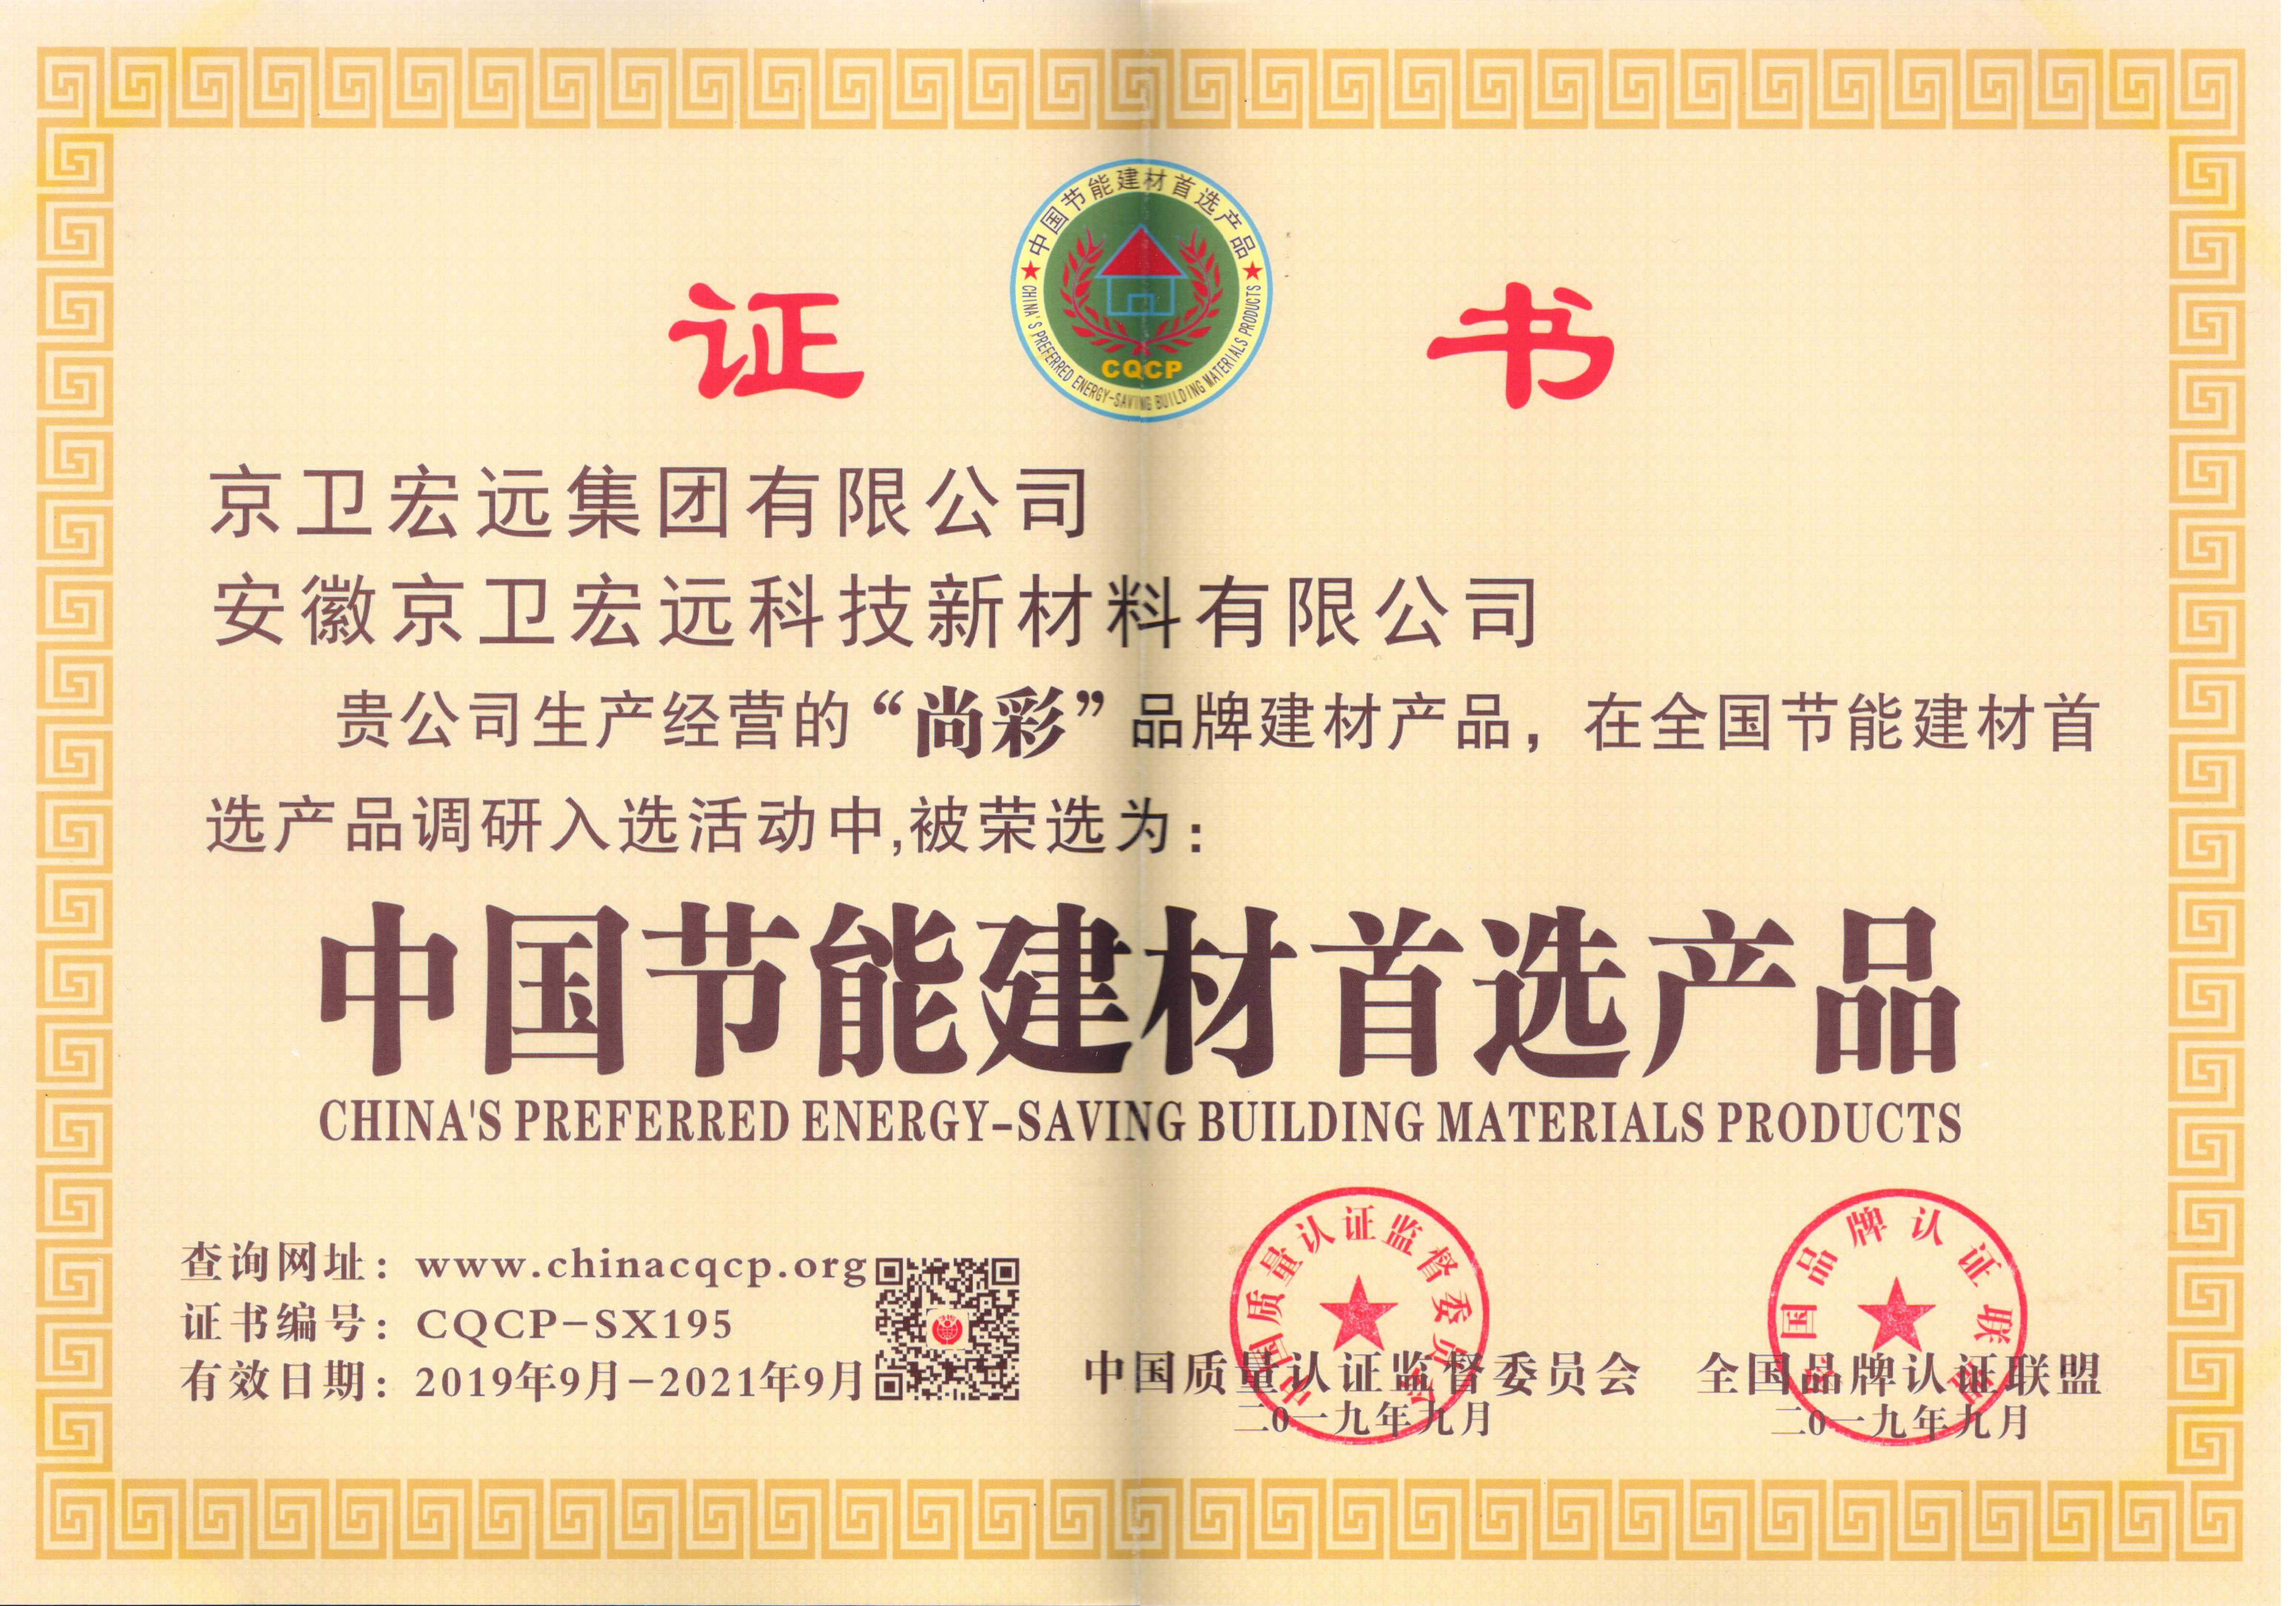 尚彩水漆中国节能建材首选产品认证证书